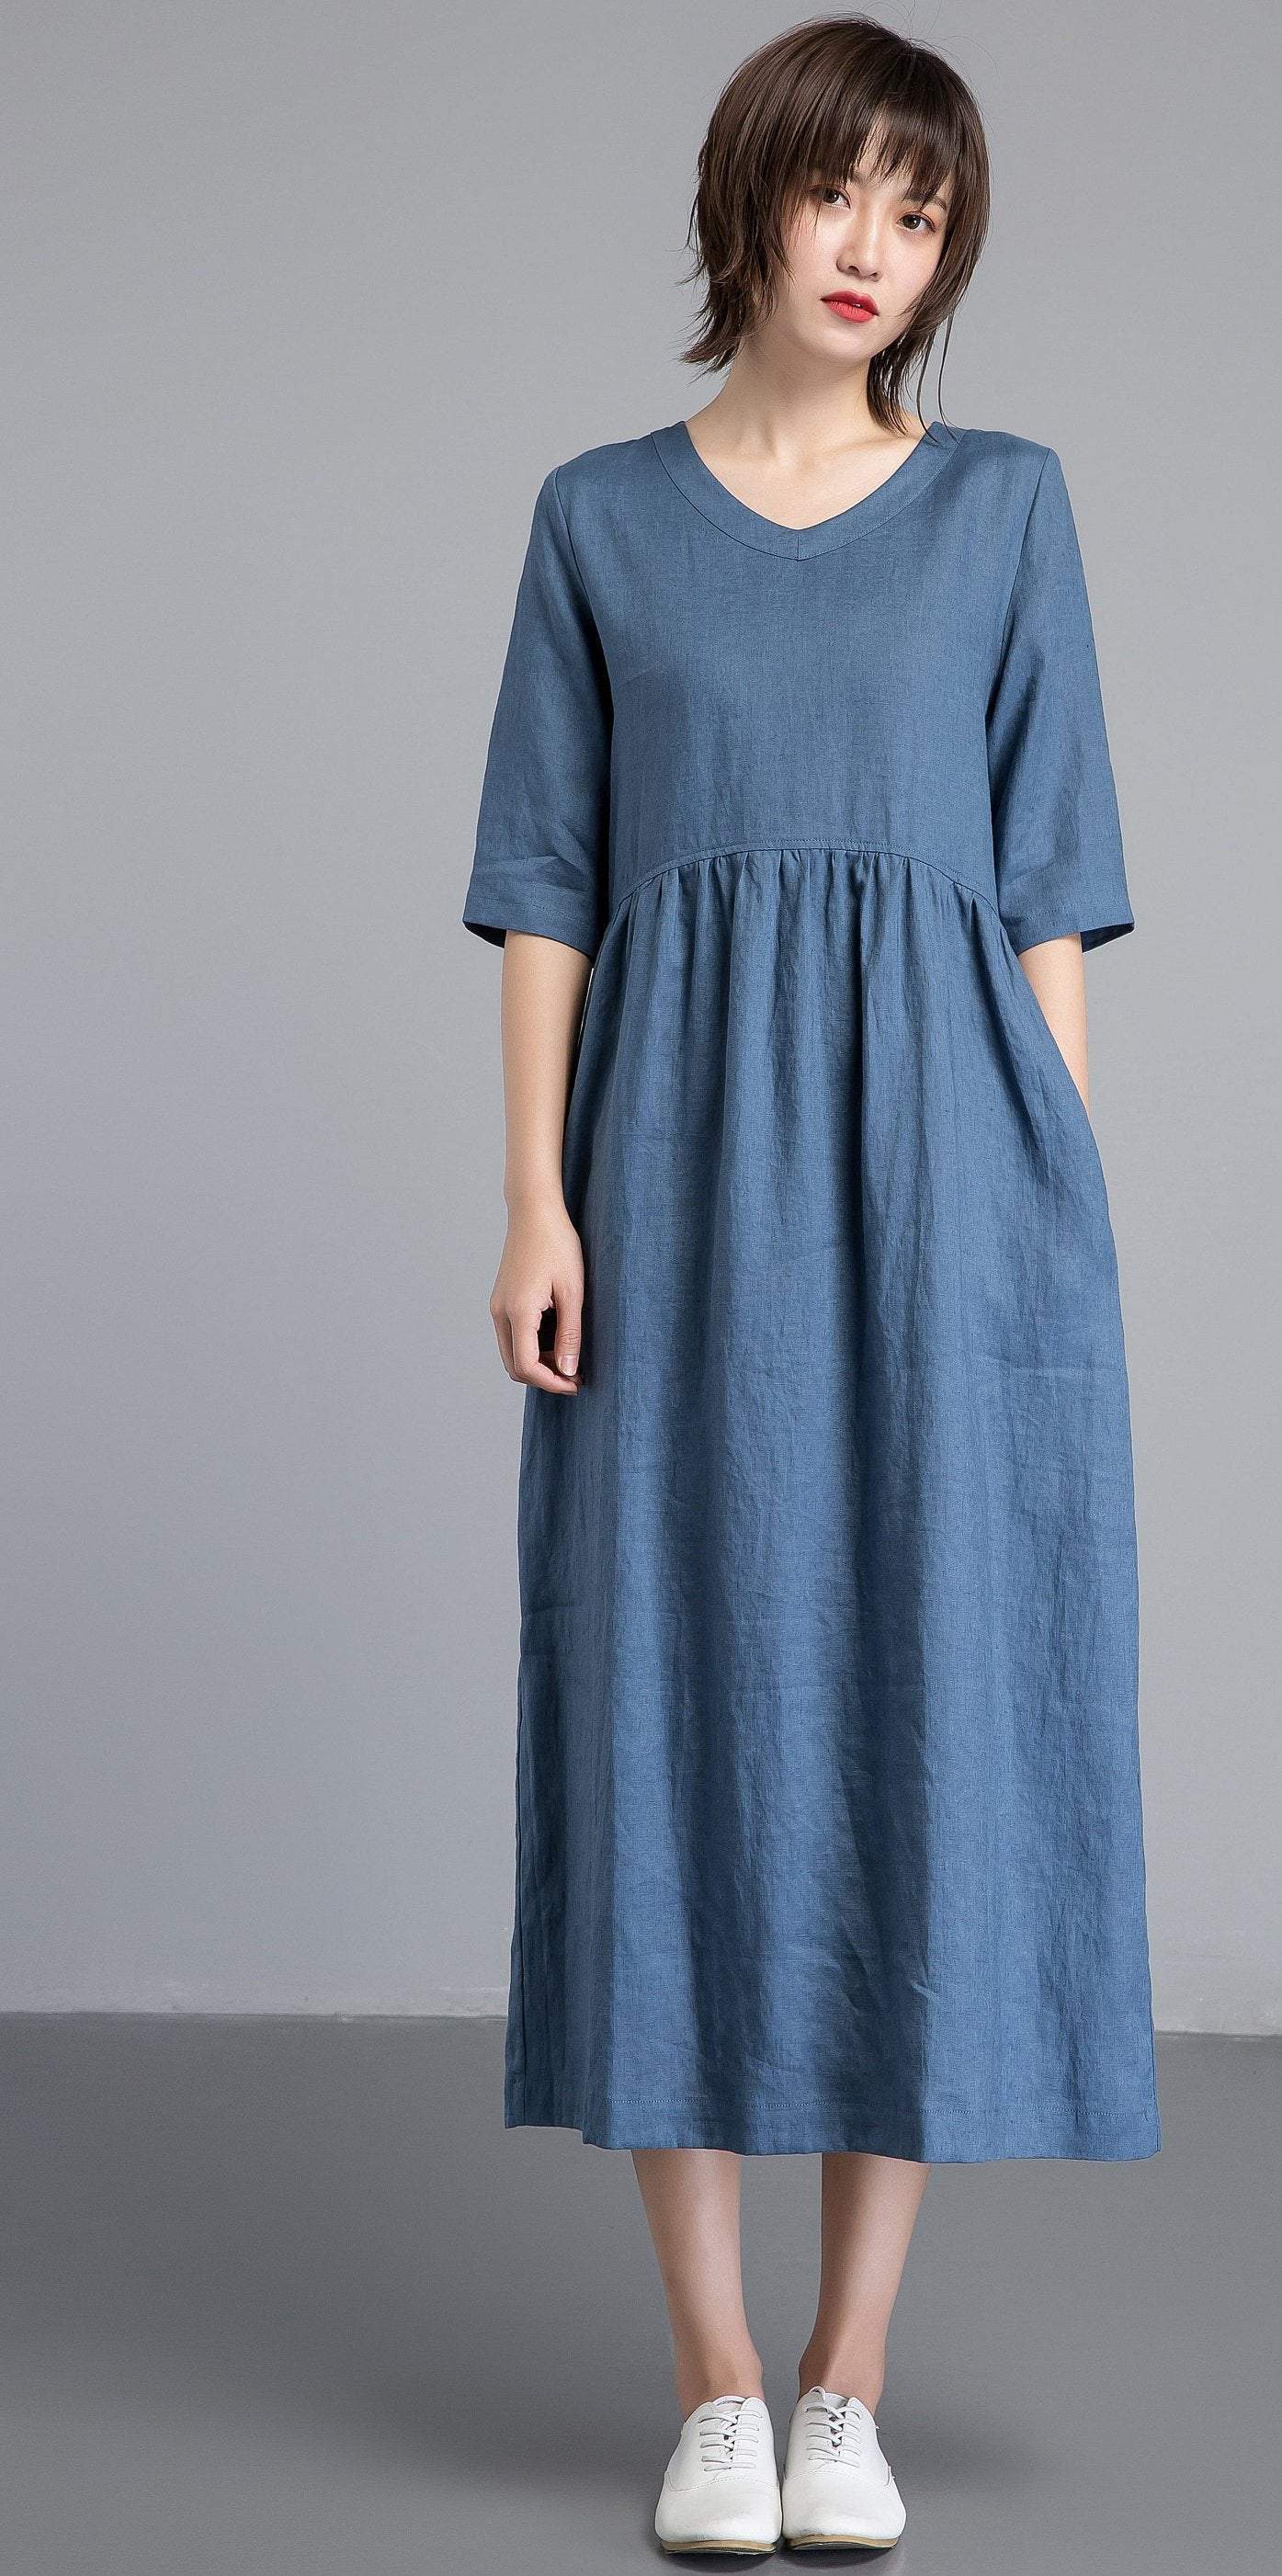 Simiple linen dress, Blue linen dress, womens dresses, long linen dress with pockets, loose linen dress, linen clothing C1256